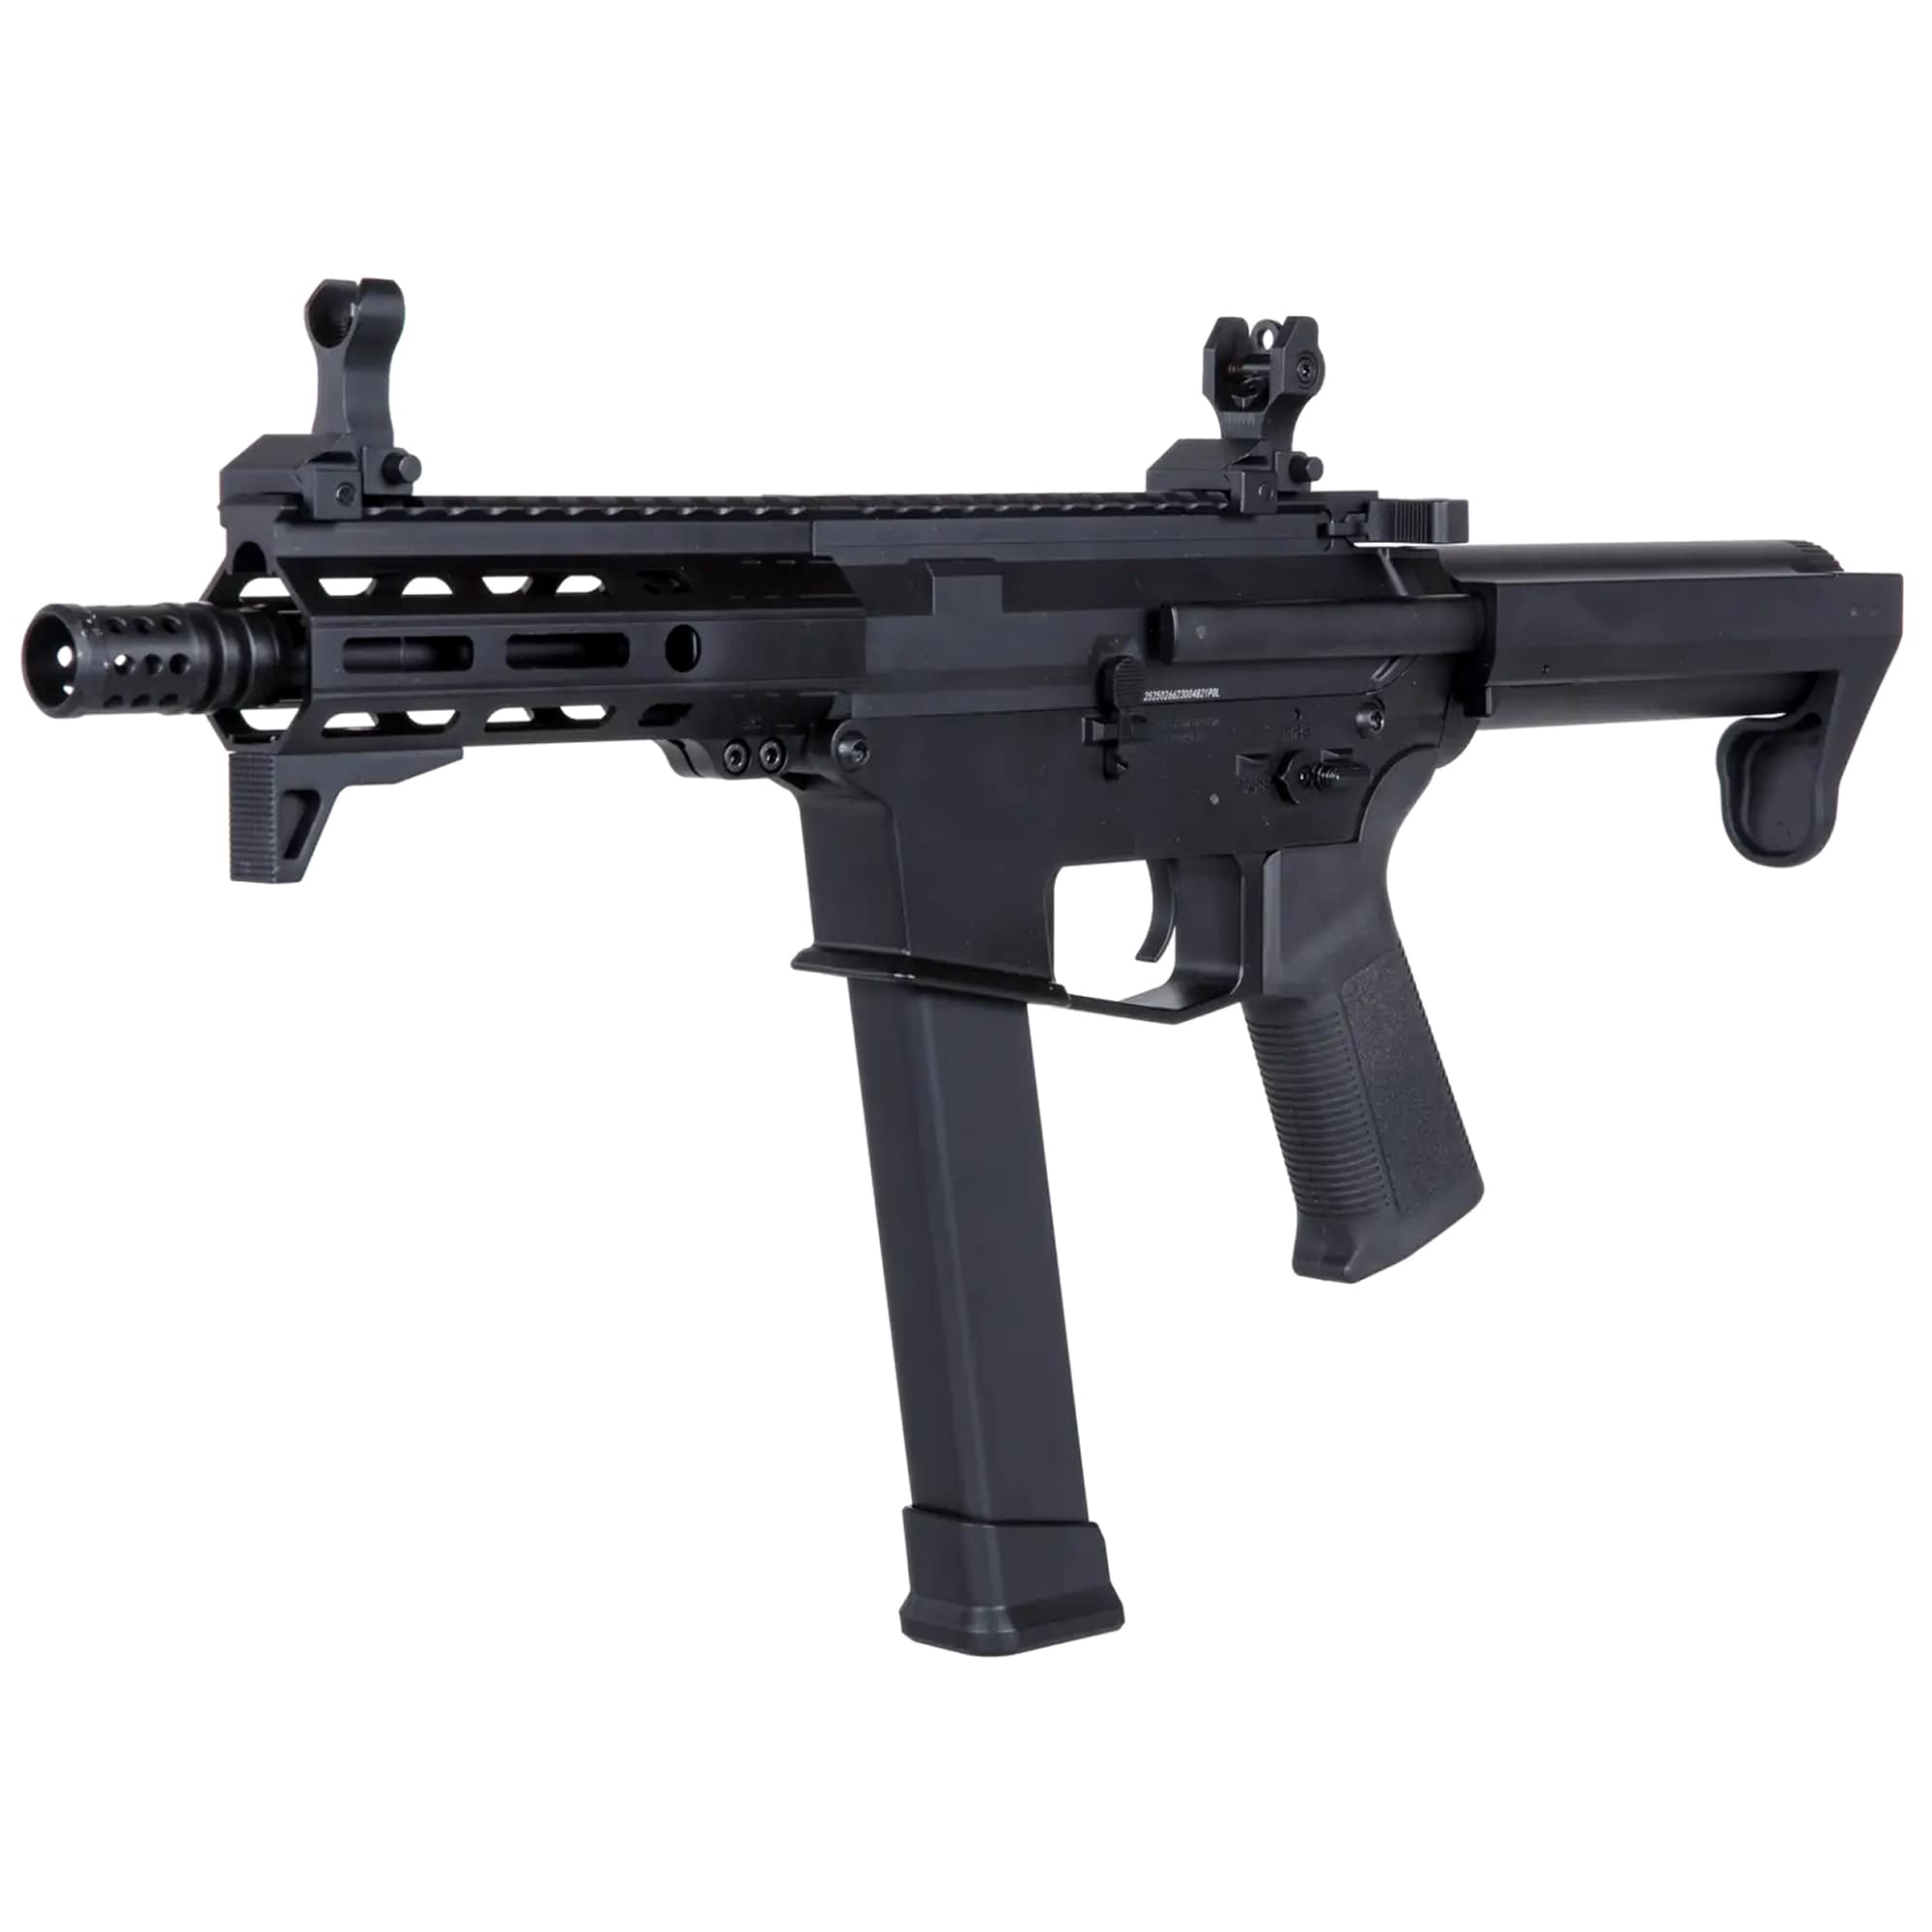 Пістолет-кулемет AEG Golden Eagle/EMG Angstadt Arms UDP-9 5,5'' - Black